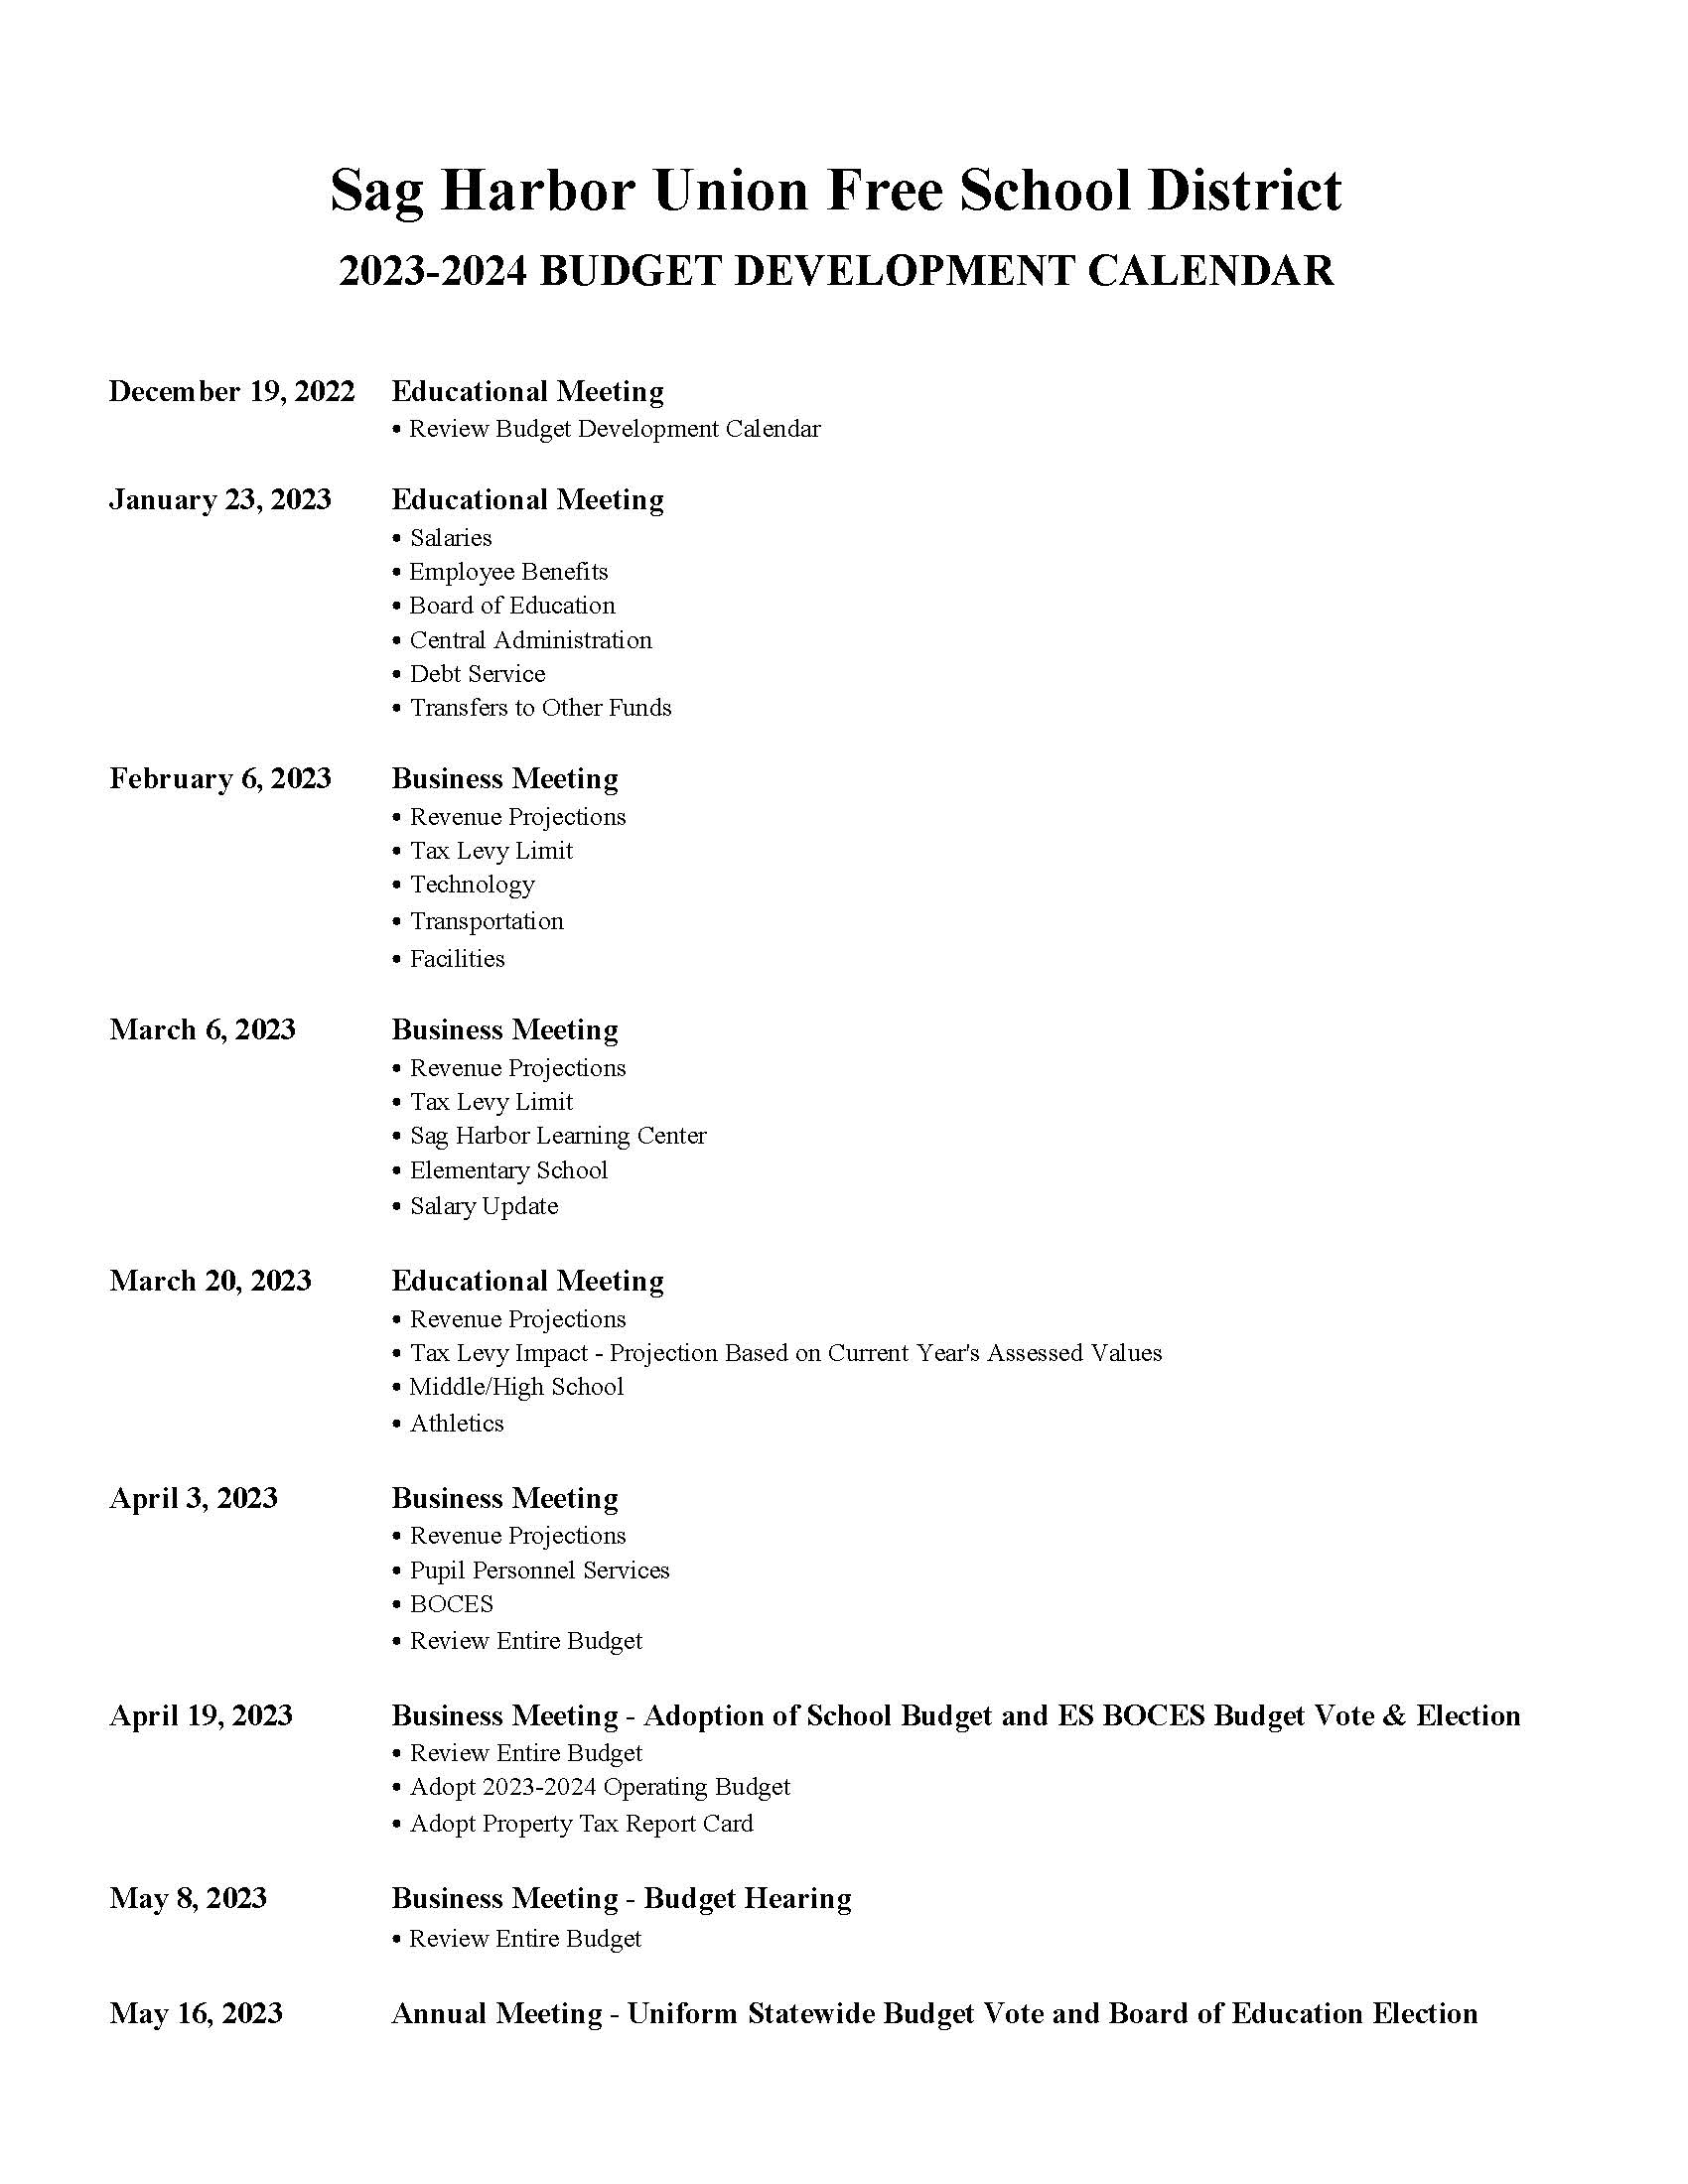 2022-2023 Budget Planning Calendar